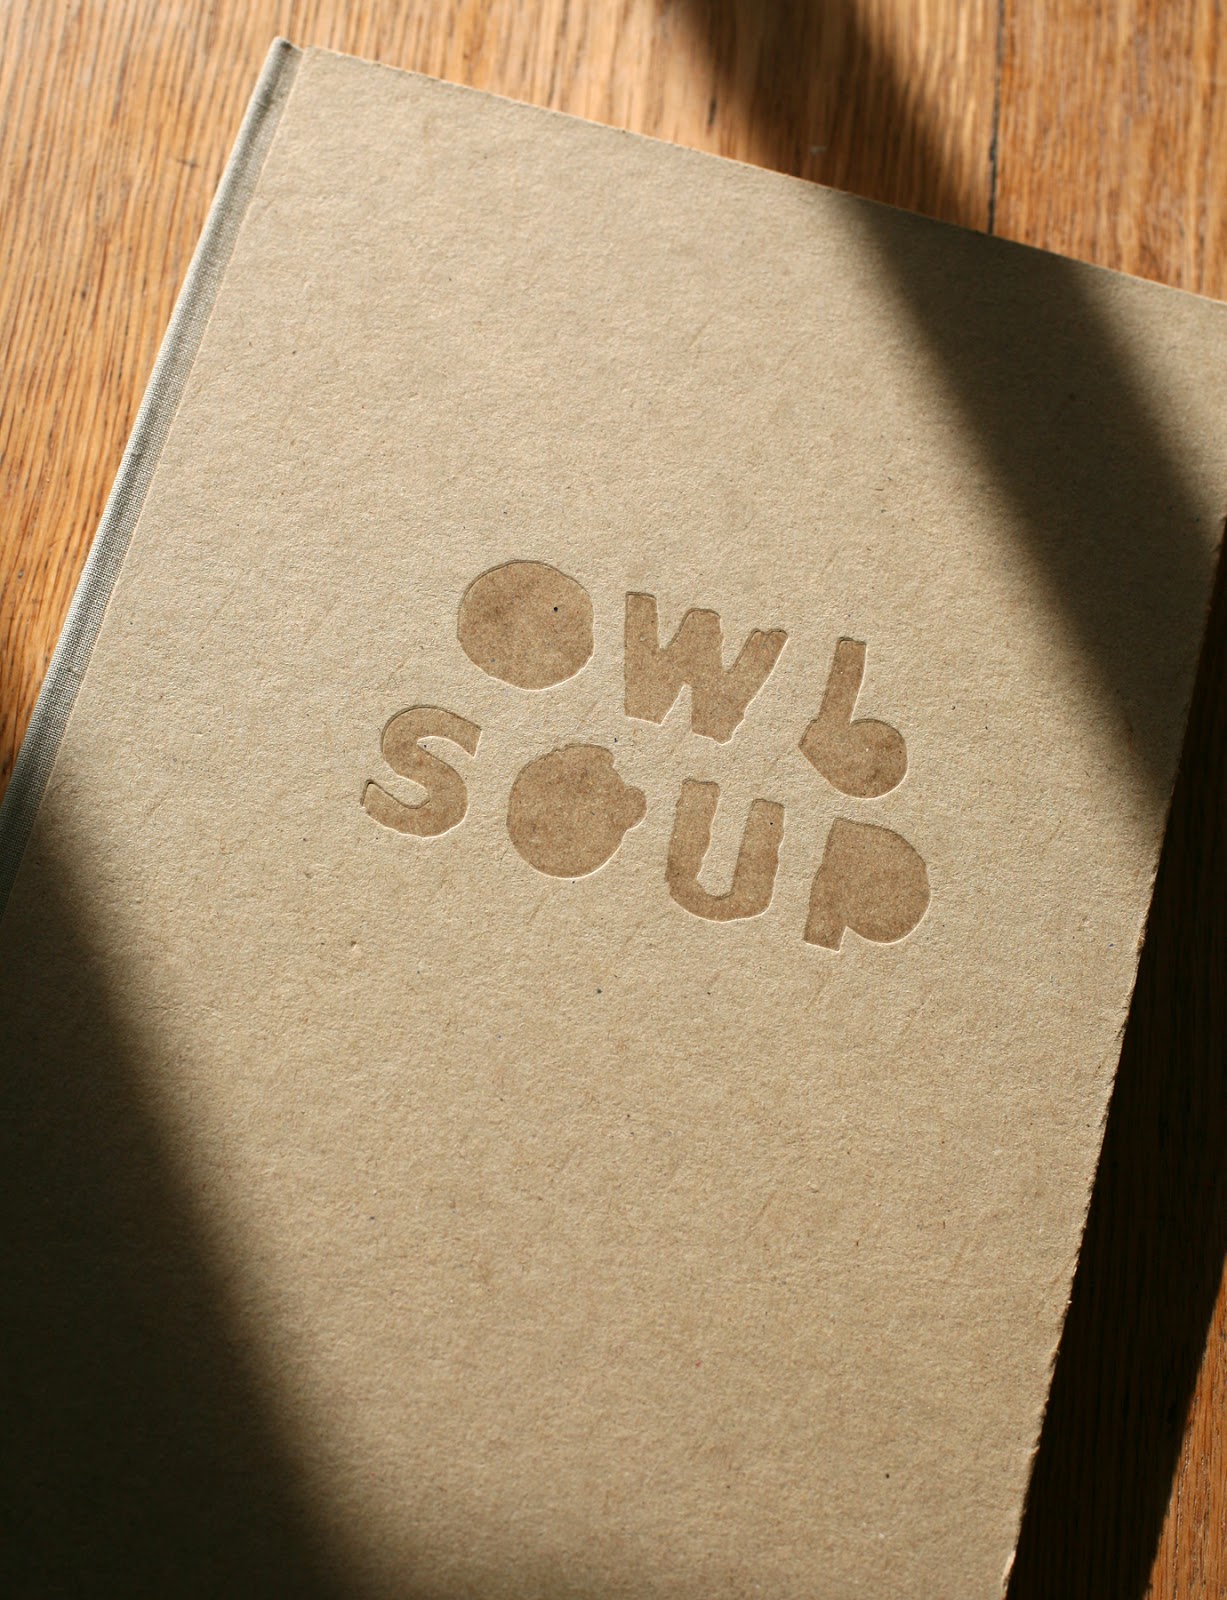 Owl Soup